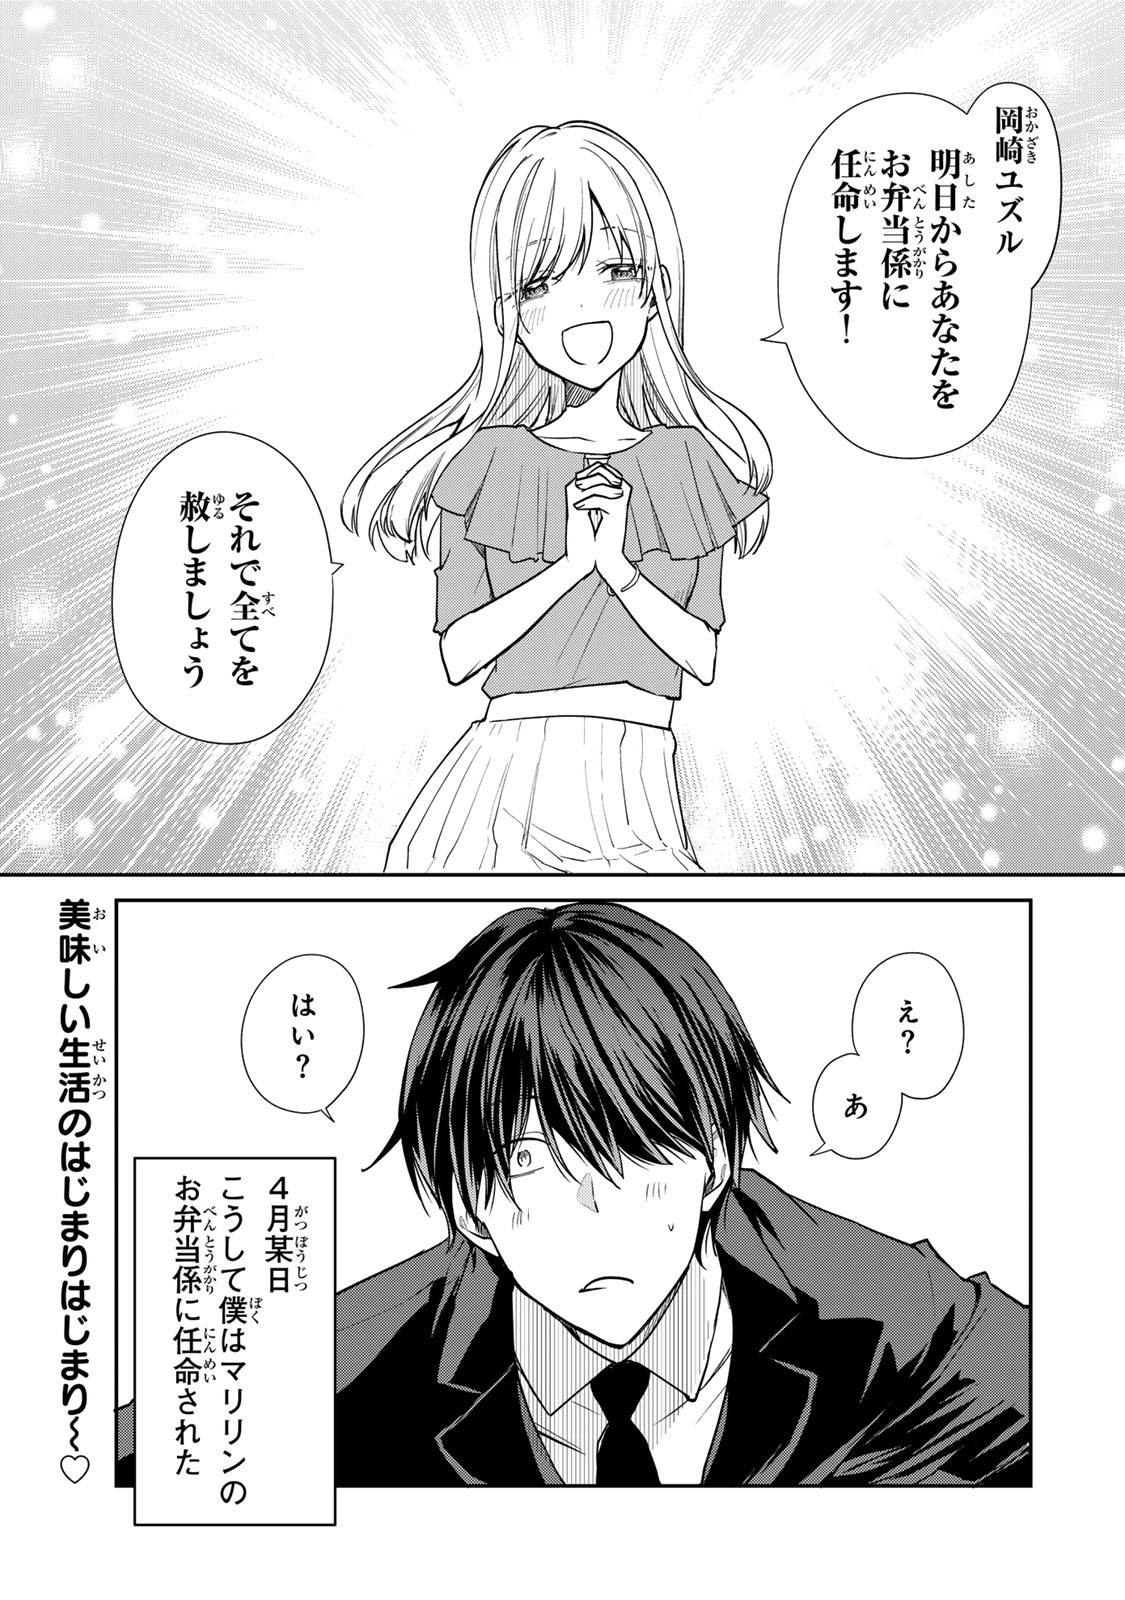 Kyou no Ohiru wa Nan desu ka? - Chapter 1 - Page 27